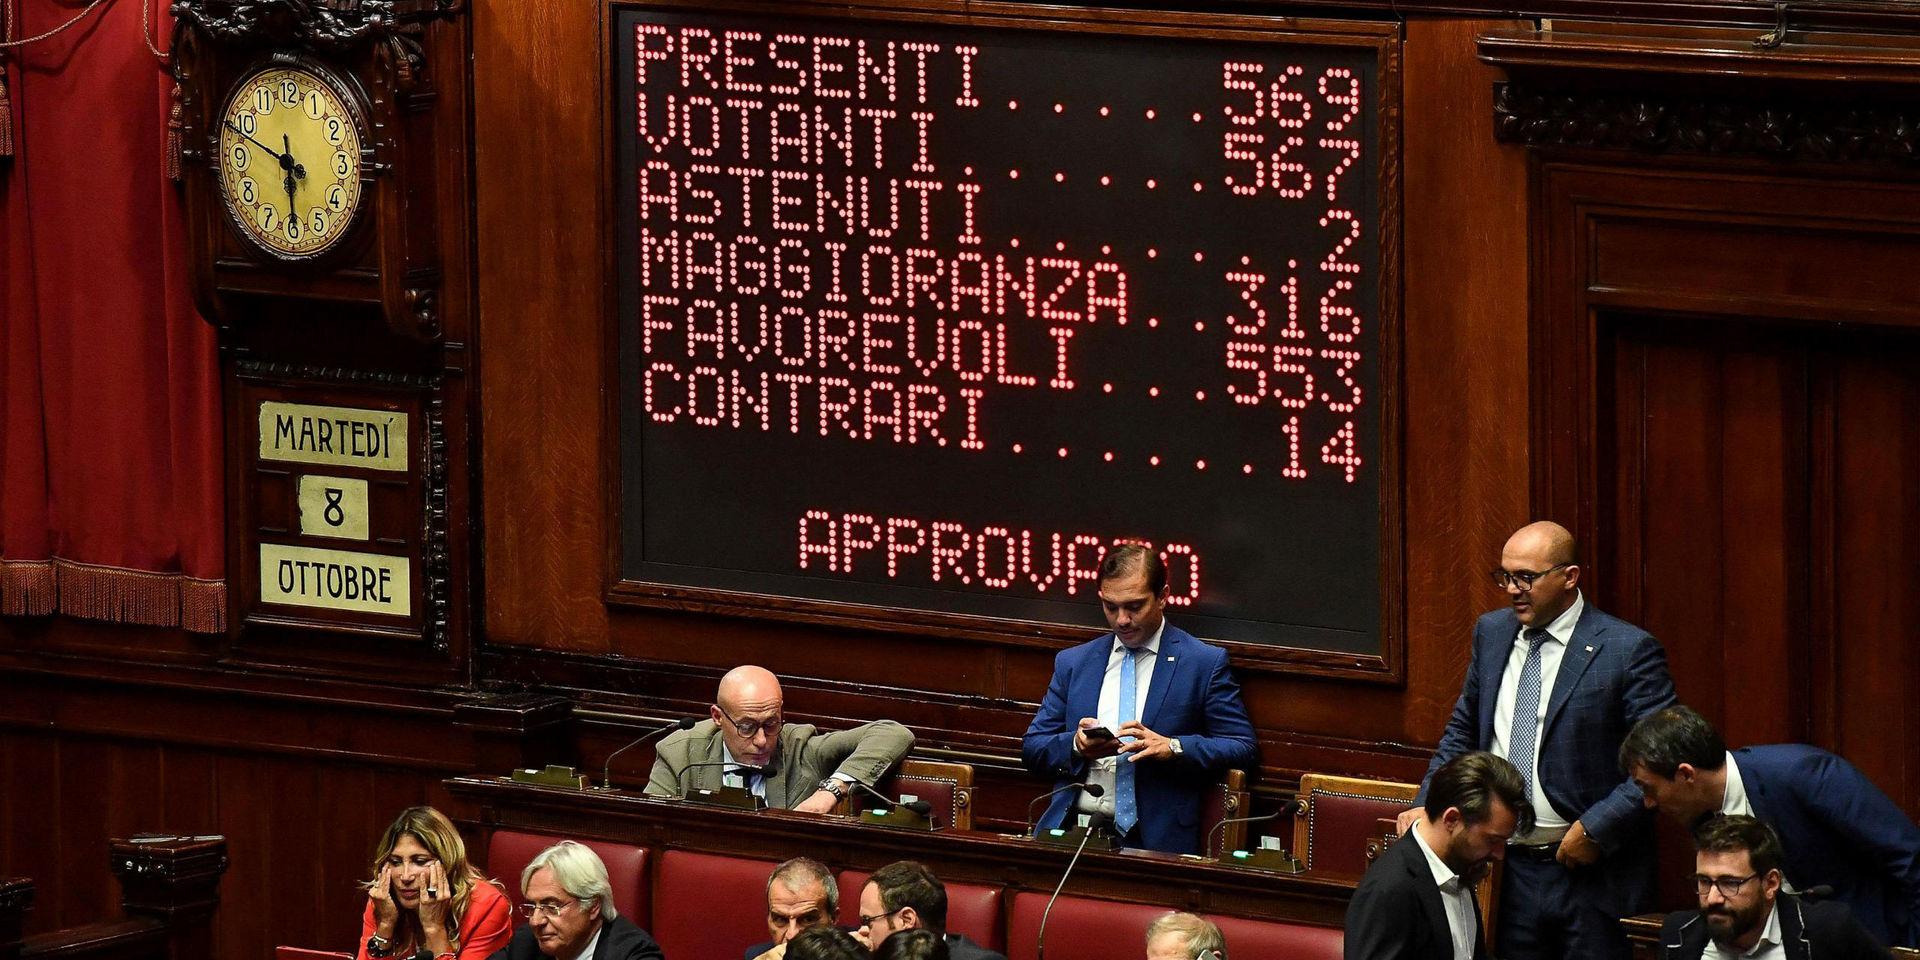 553 parlamentsledamöter röstade för parlamentskrympningen och 14 emot.